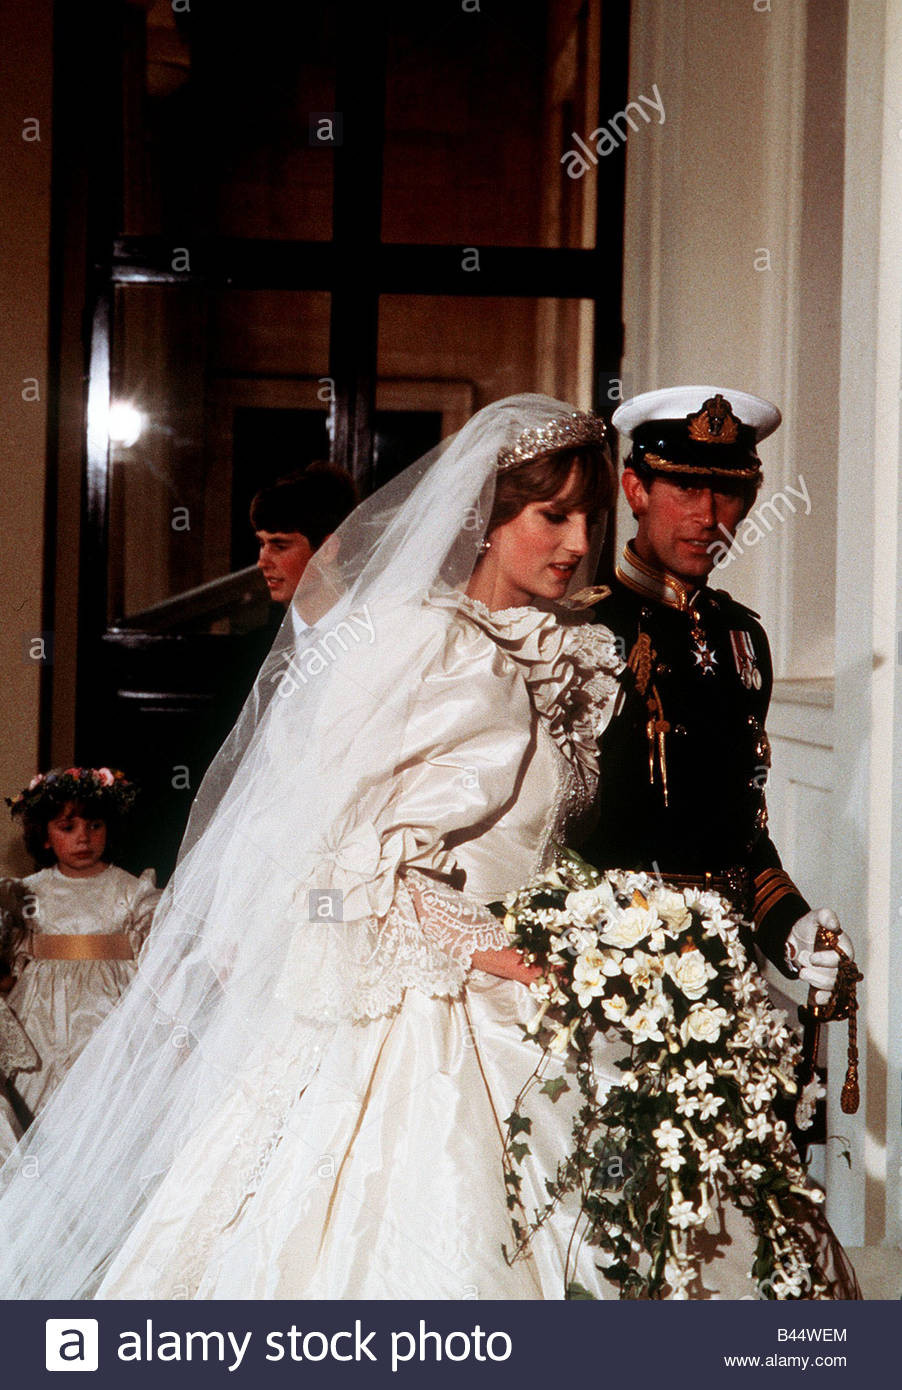 Diana Und Charles Hochzeit
 Königliche Hochzeit Prinz Charles und Prinzessin Diana